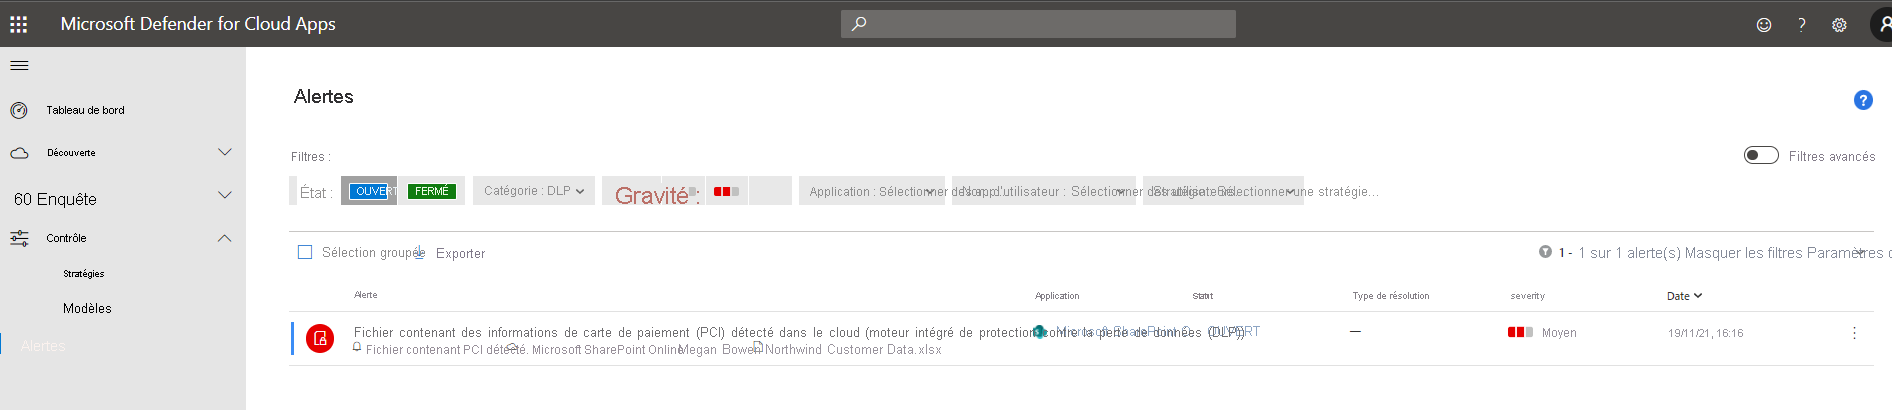 Screen shot of Defender for Cloud Apps Alerts Dashboard